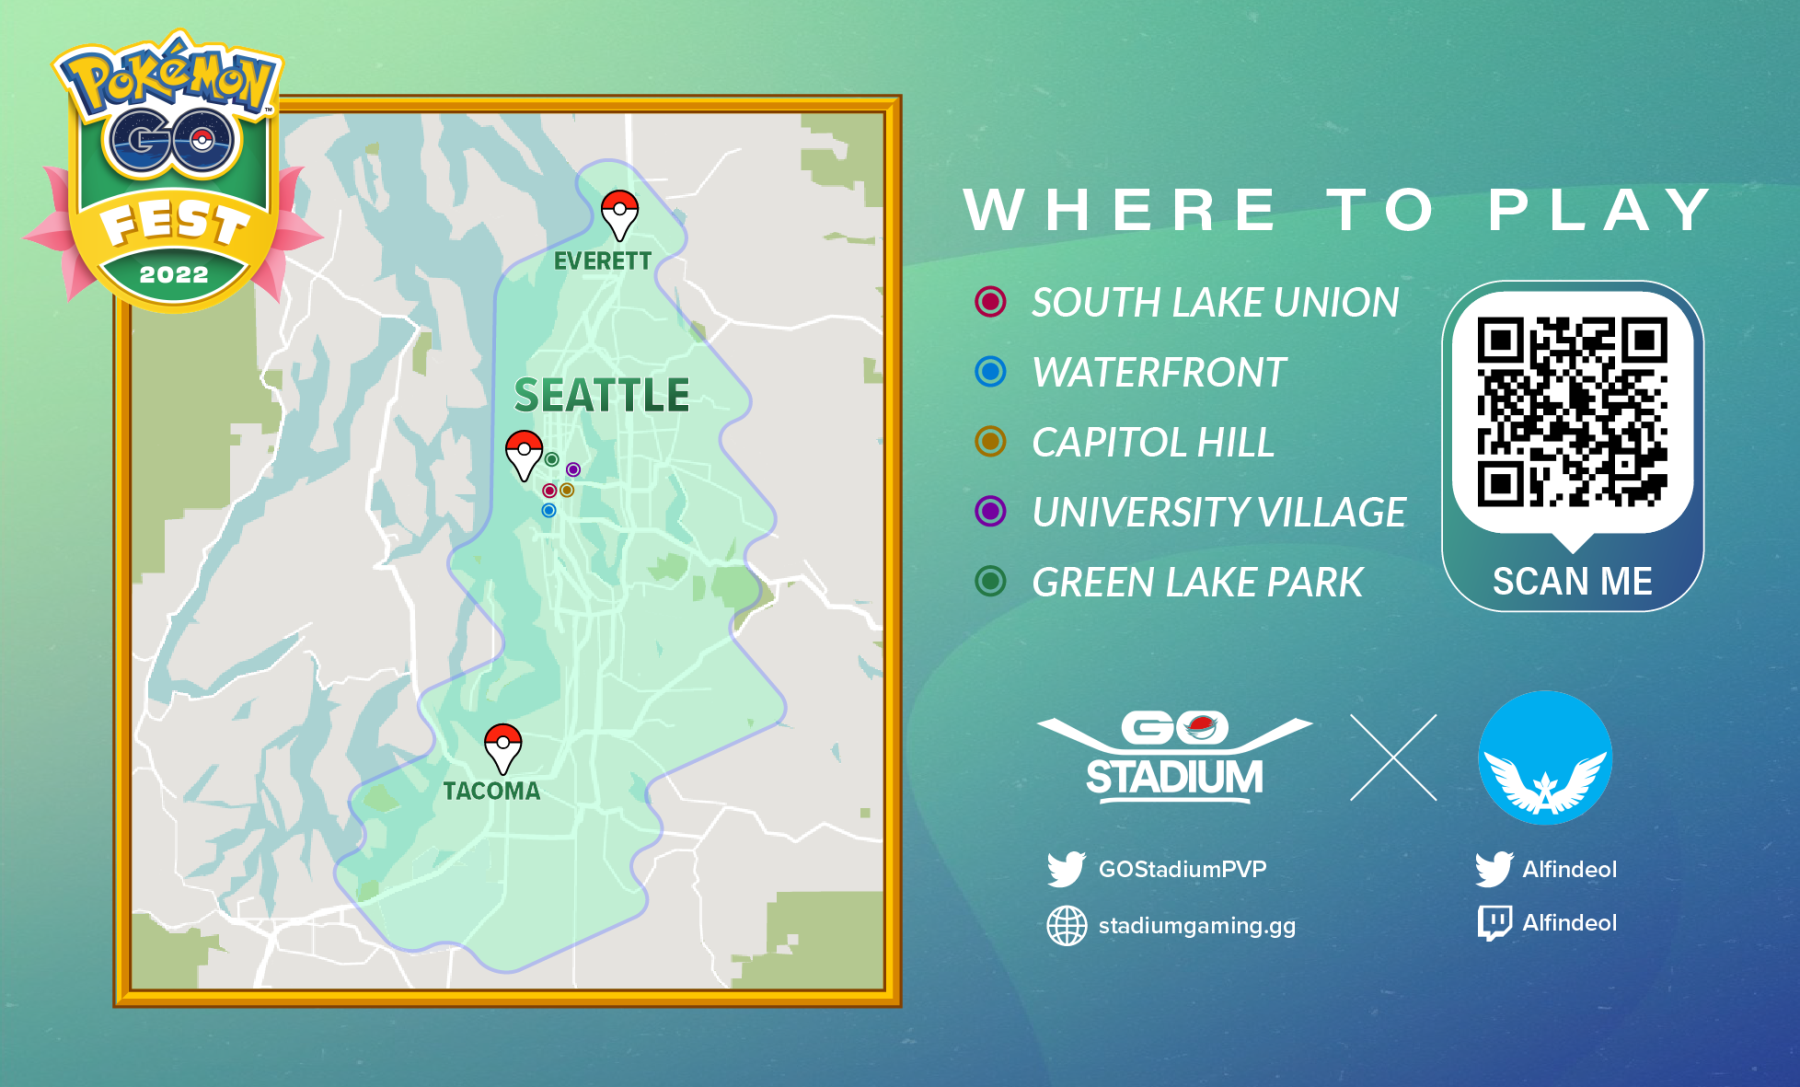 GO Fest Seattle 2022 - Das größte Event aller Zeiten? 4